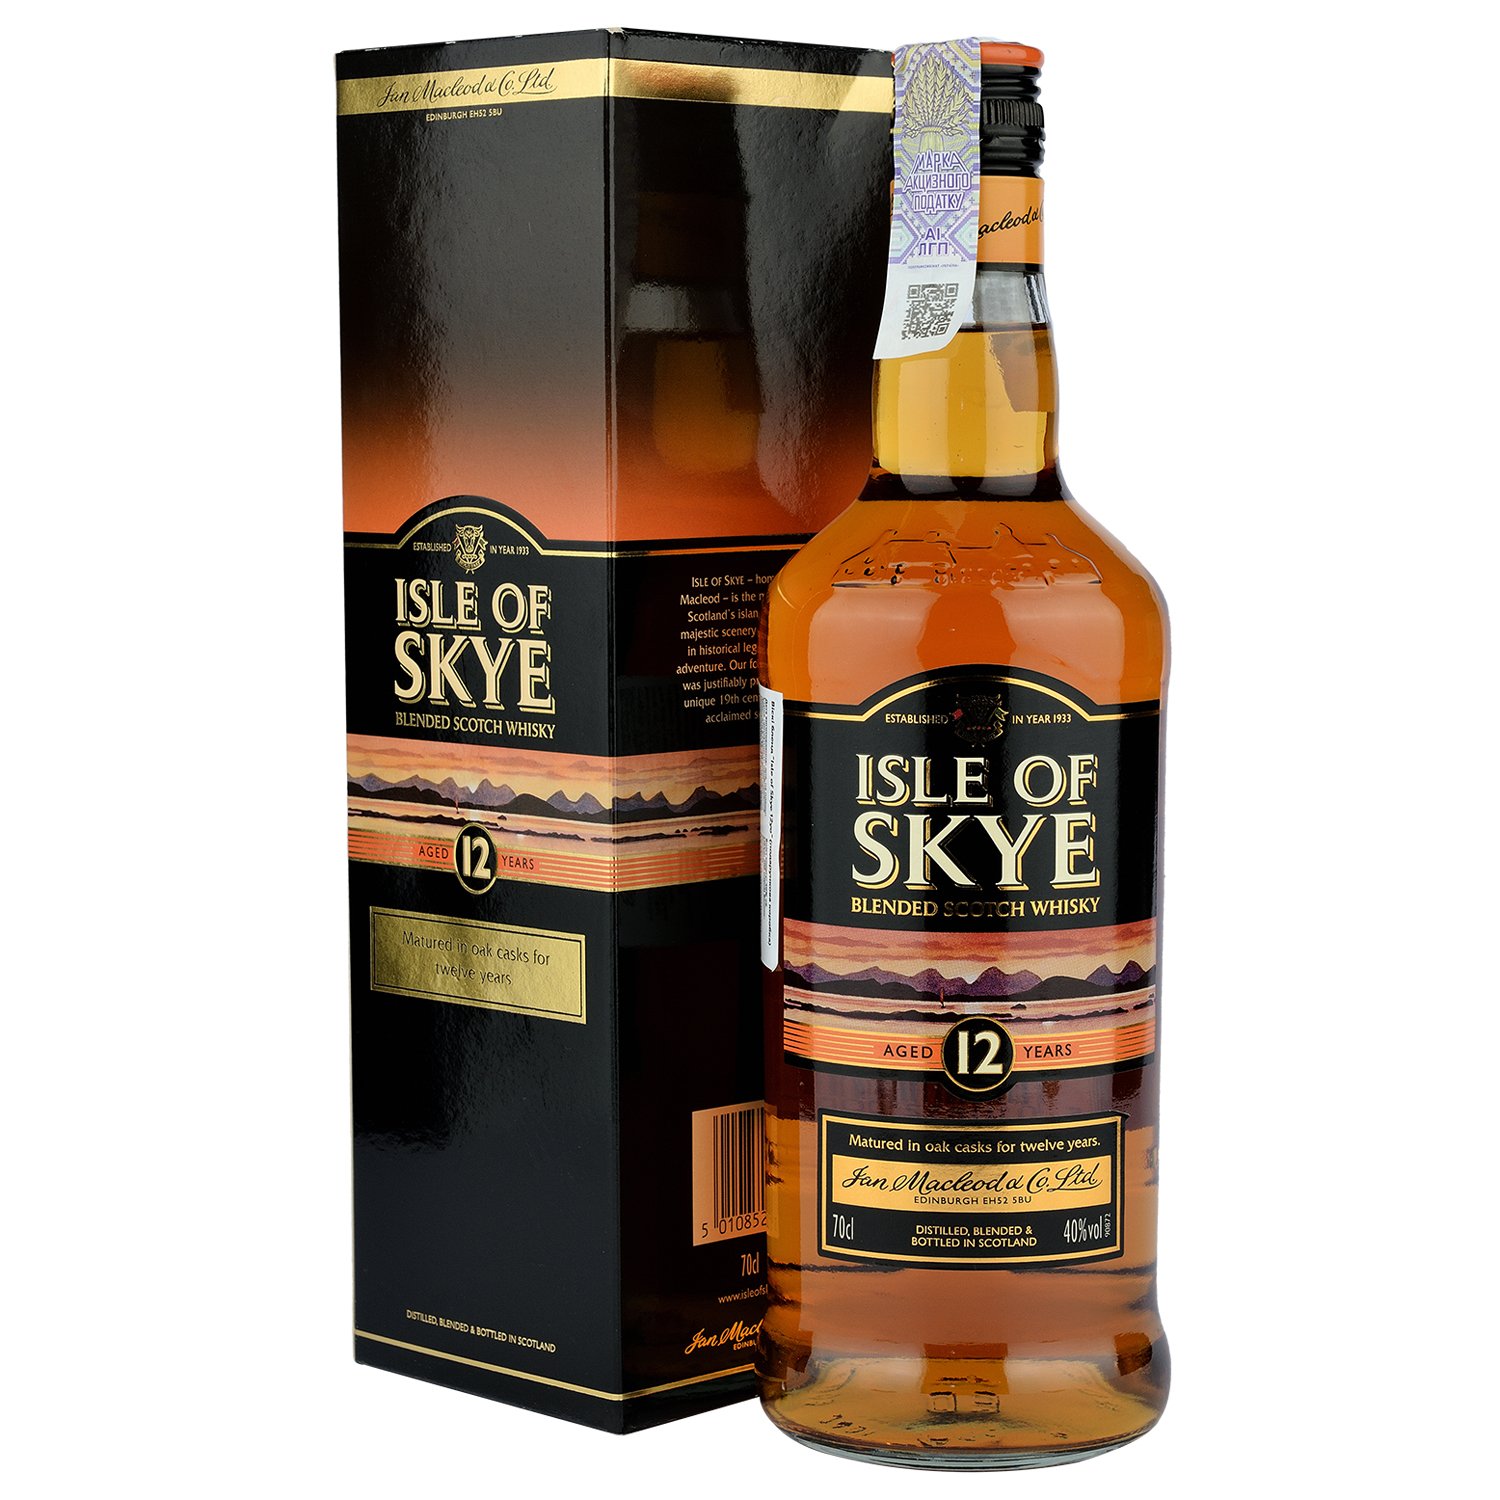 Віскі Isle of Skye Blended Scotch Whisky 12 yo, в подарунковій упаковці, 40%, 0,7 л - фото 1